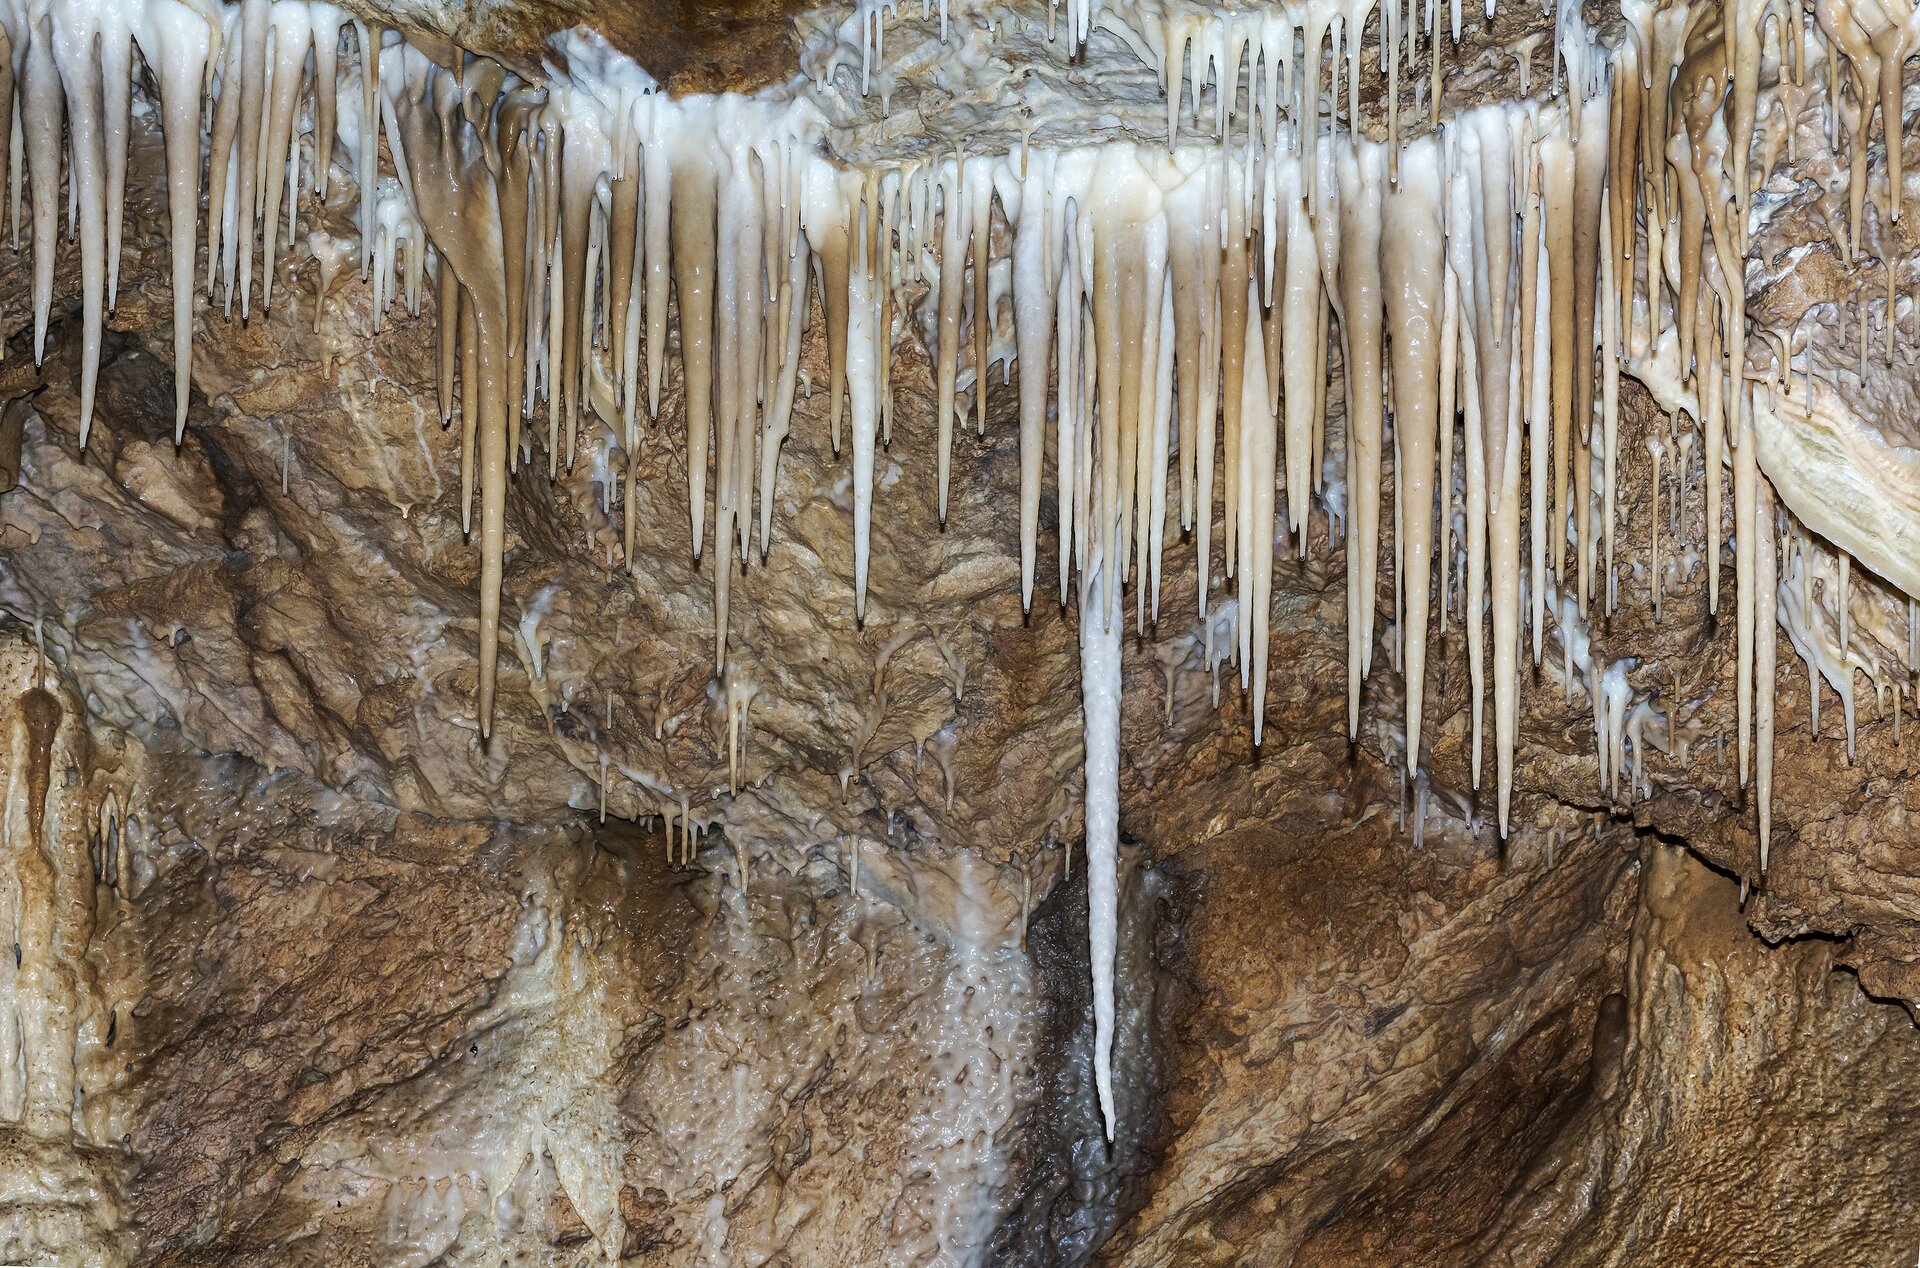 Ilustracja przedstawia zbliżenie na stalaktyty w Jaskini Niedźwiedziej. Pionowe podłużne stożki w kolorze beżowo białym zwisają ze stropu jaskini.